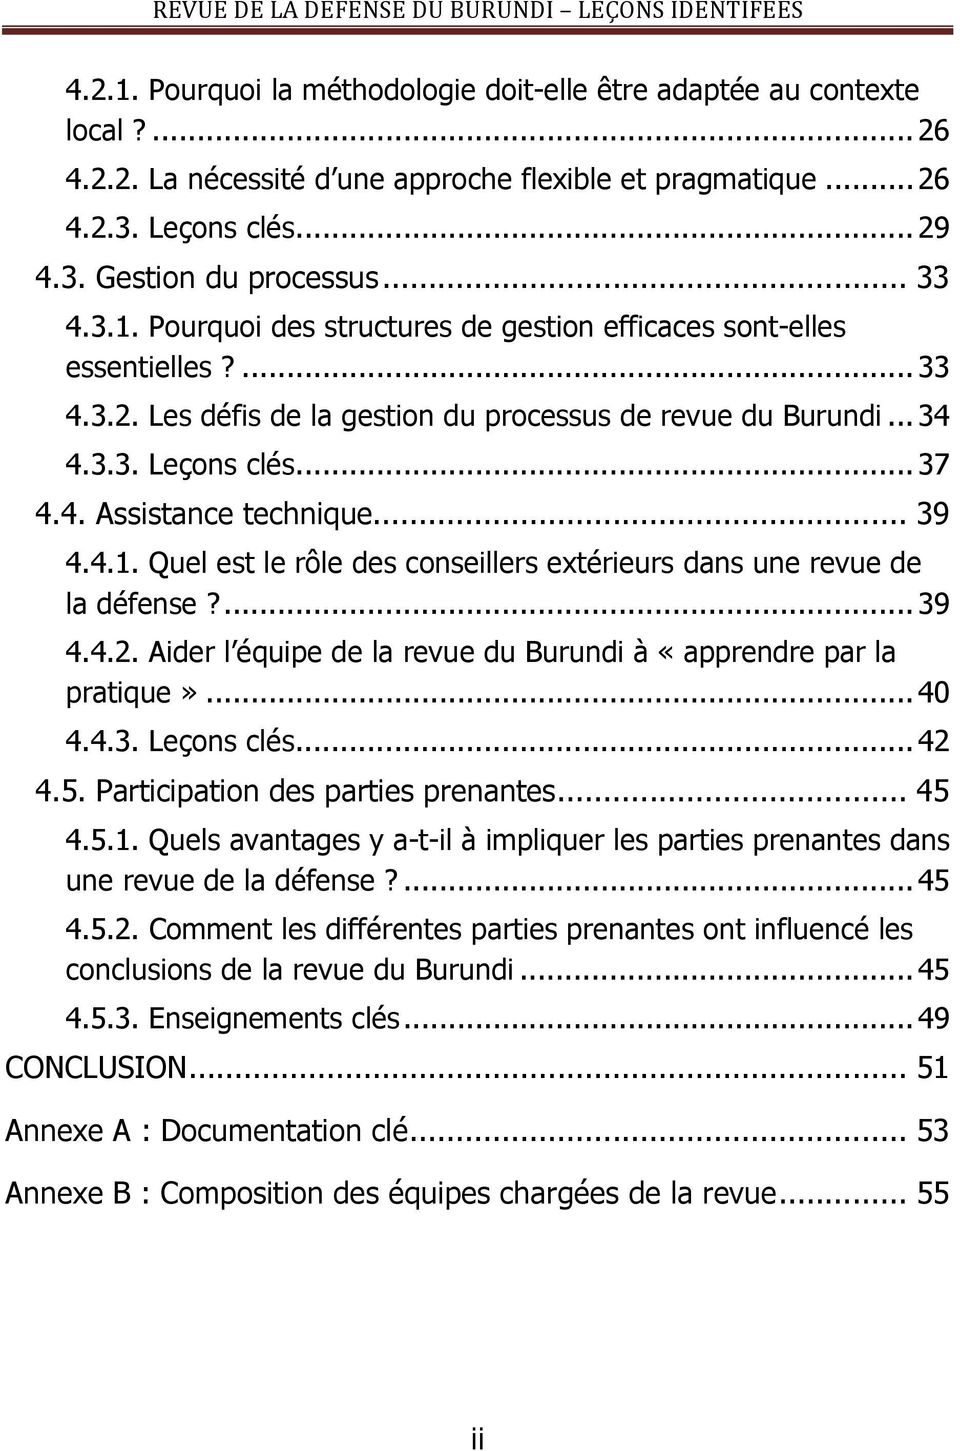 .. 39 4.4.1. Quel est le rôle des conseillers extérieurs dans une revue de la défense?... 39 4.4.2. Aider l équipe de la revue du Burundi à «apprendre par la pratique»... 40 4.4.3. Leçons clés... 42 4.